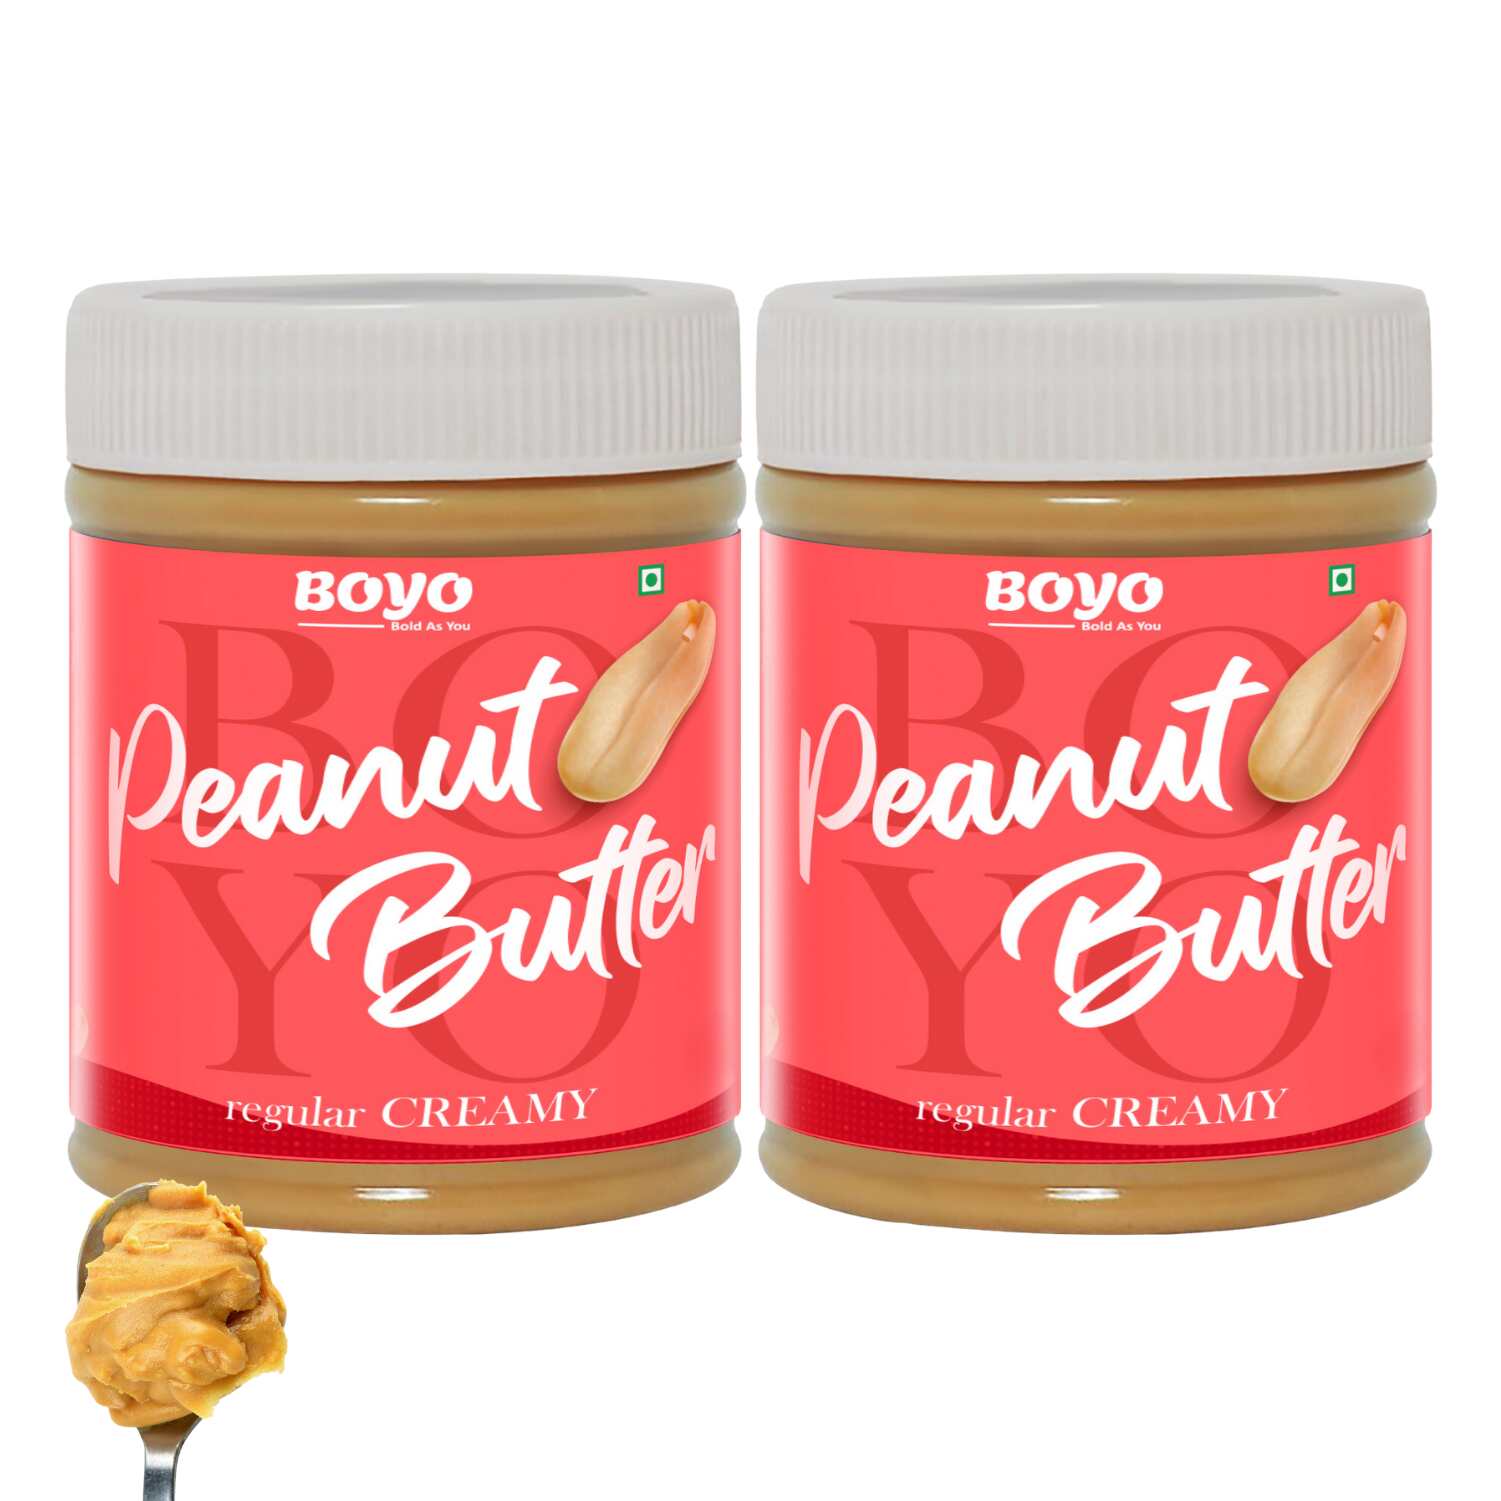 Peanut Butter Combo Regular Creamy 510g Each - Pack of 2